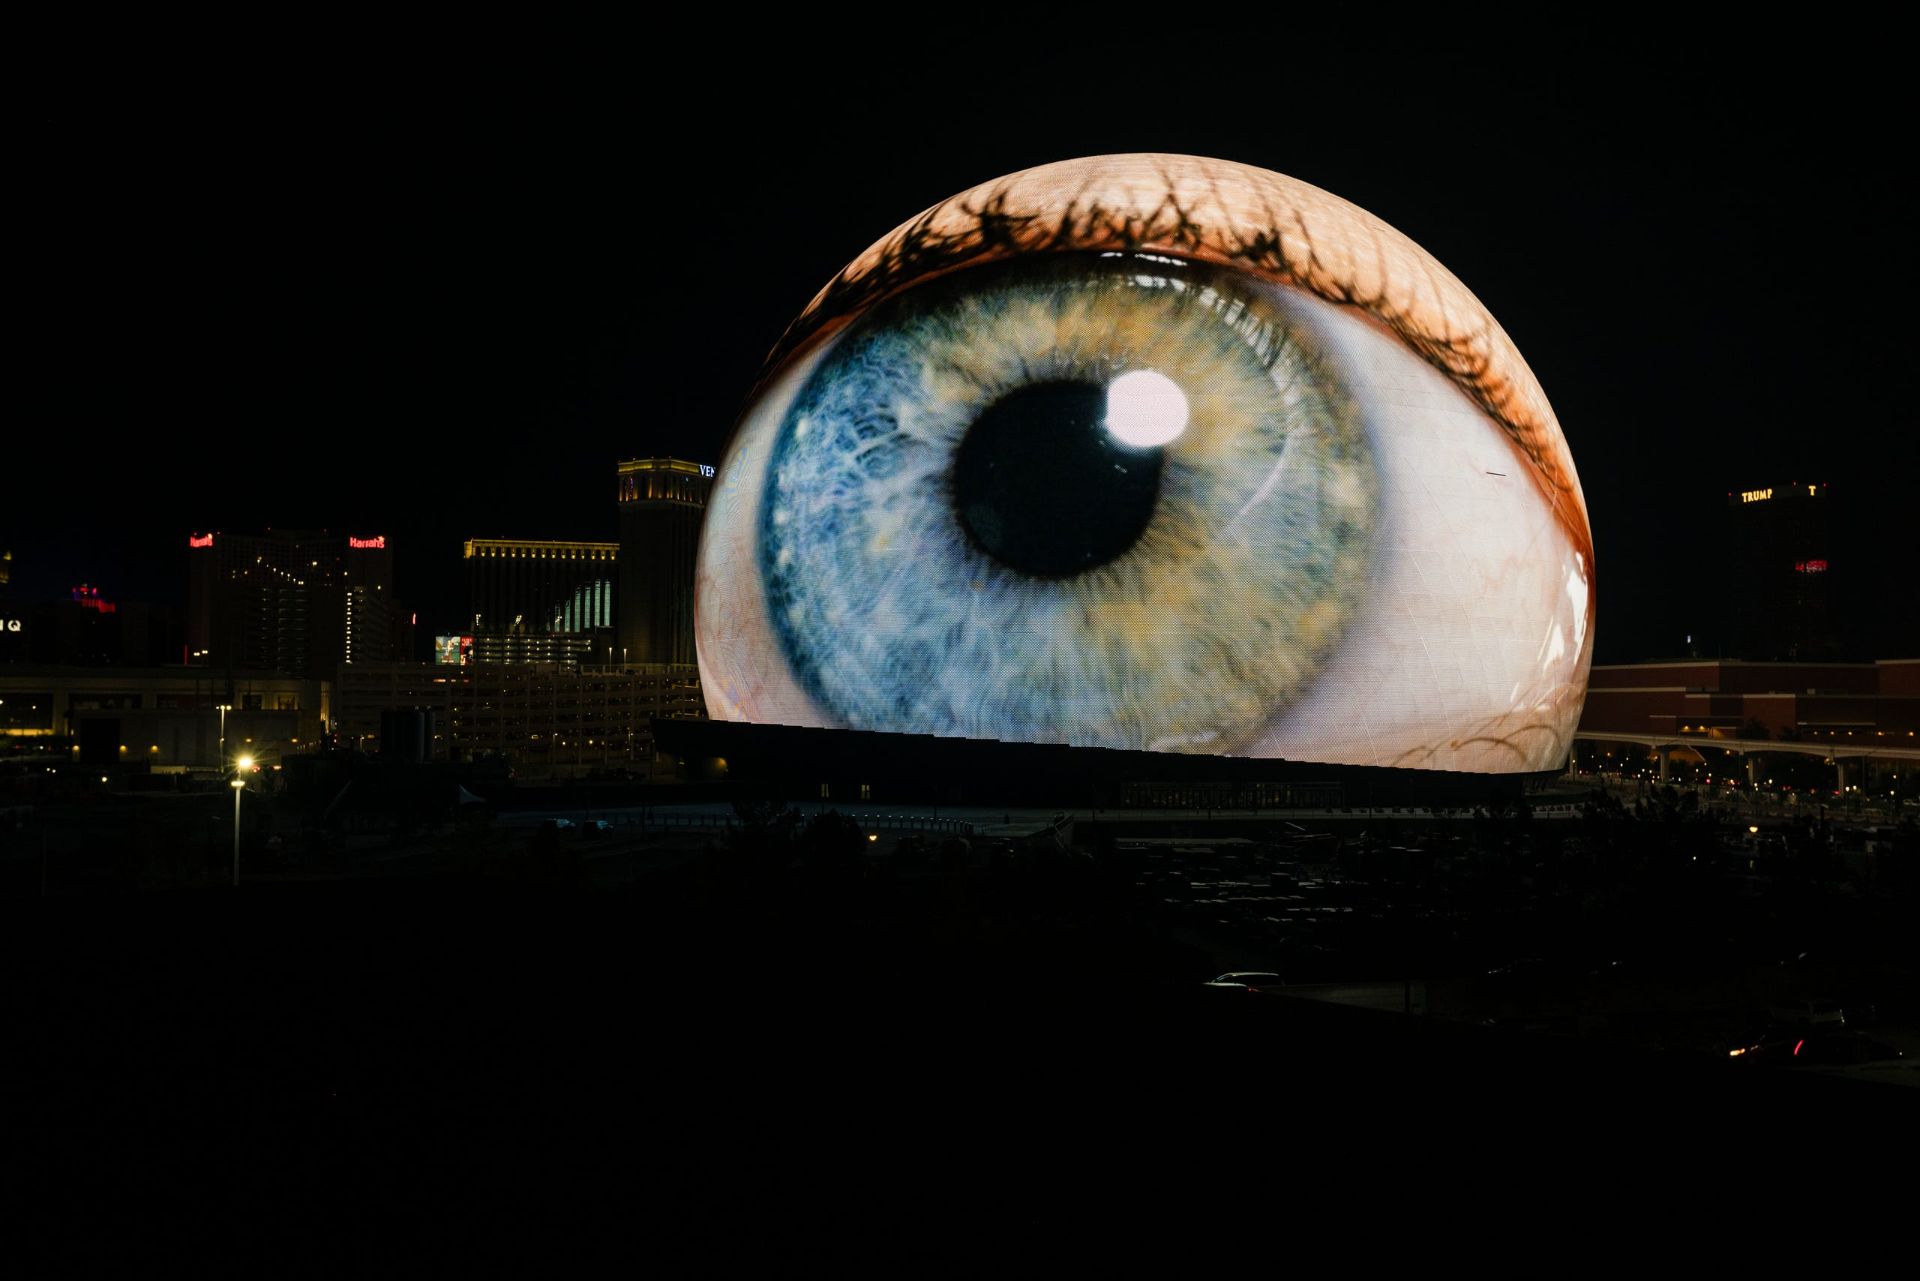 نمایش حدقه چشم در Sphere لاس وگاس